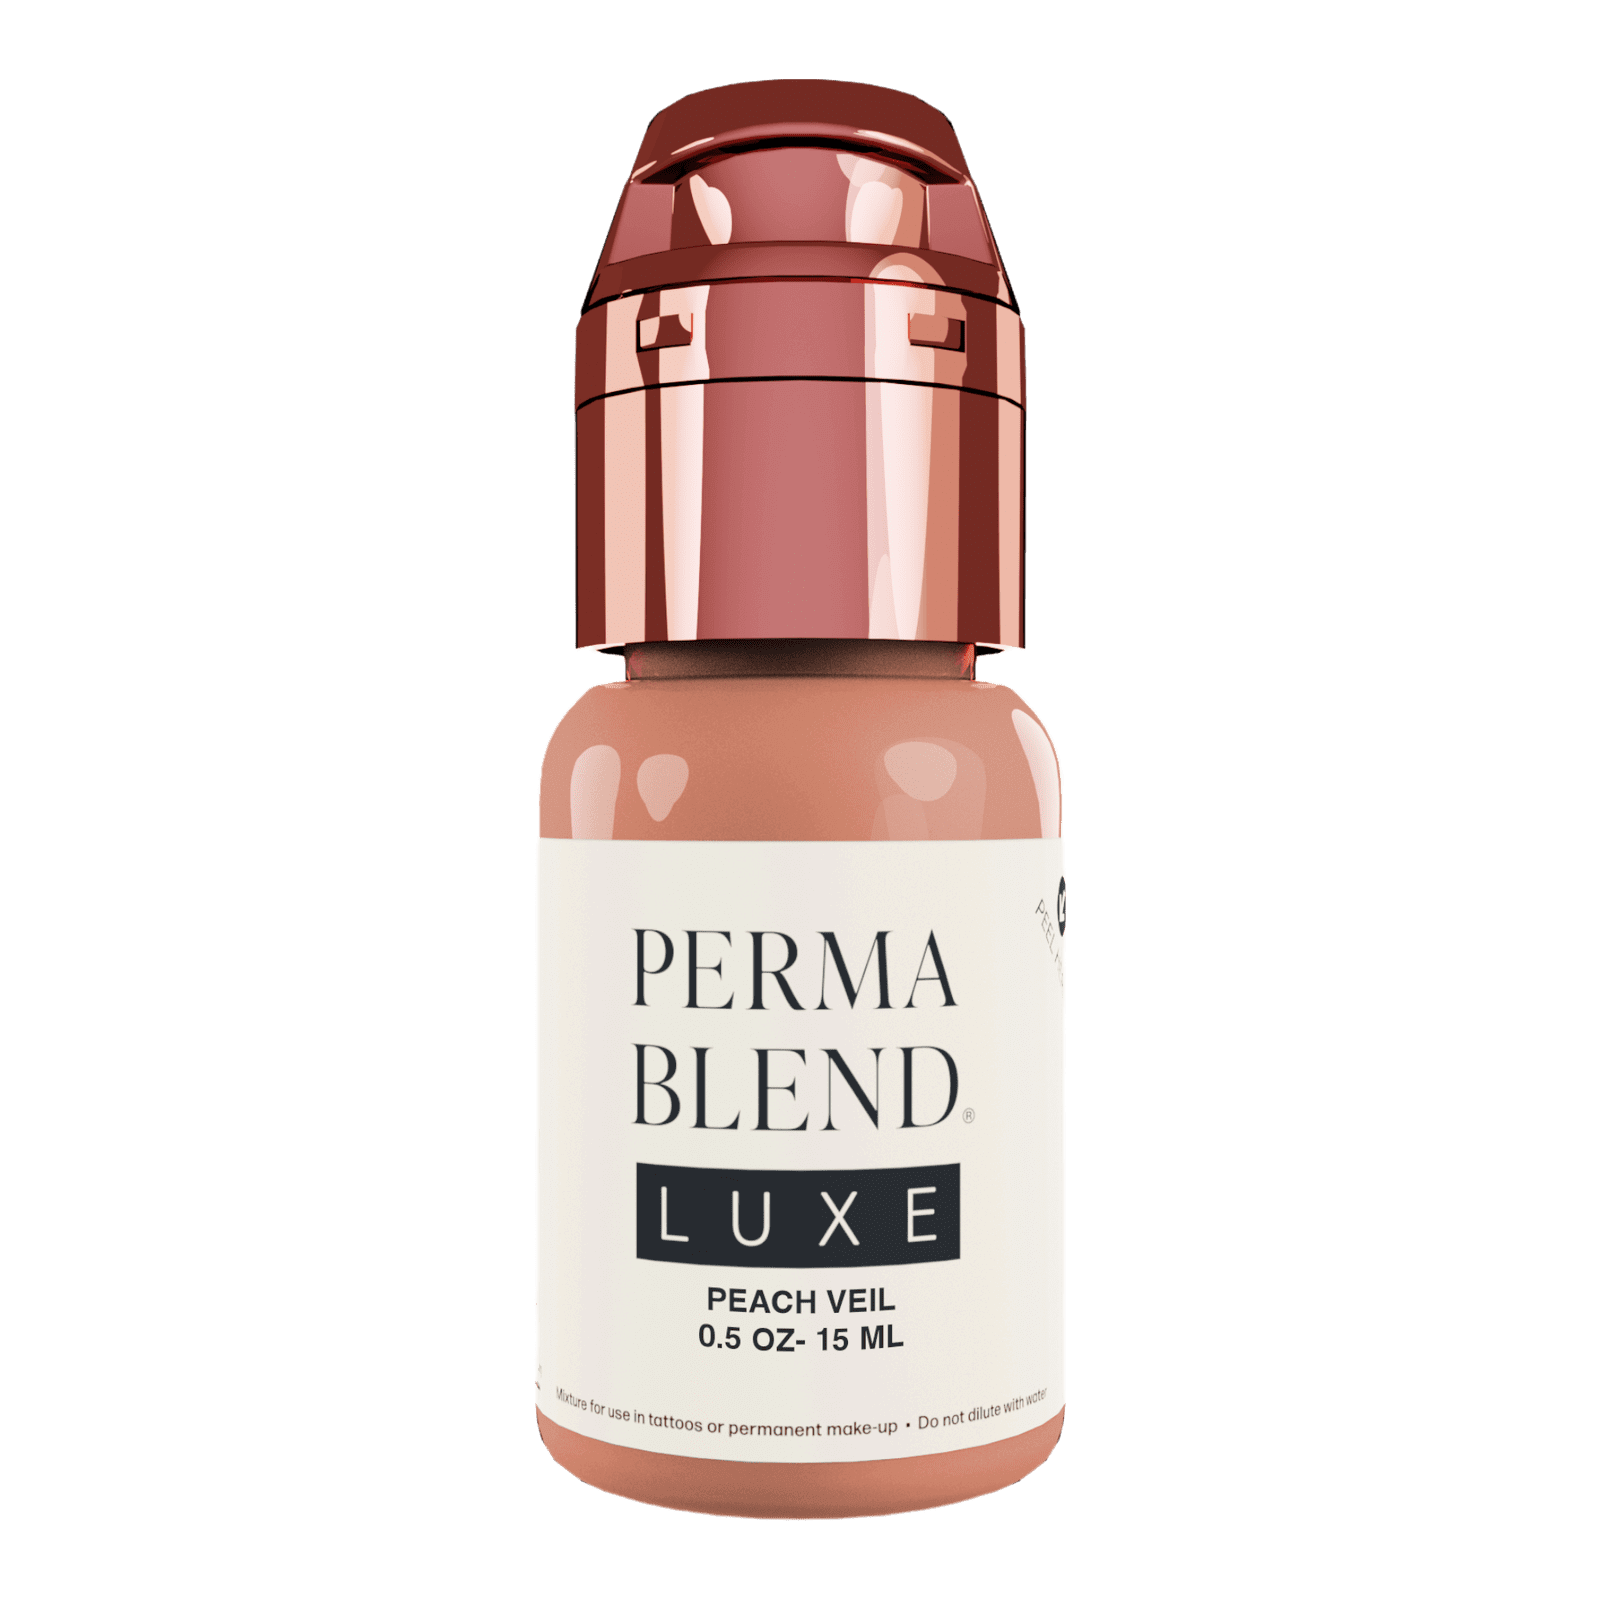 Perma Blend Luxe Peach Veil